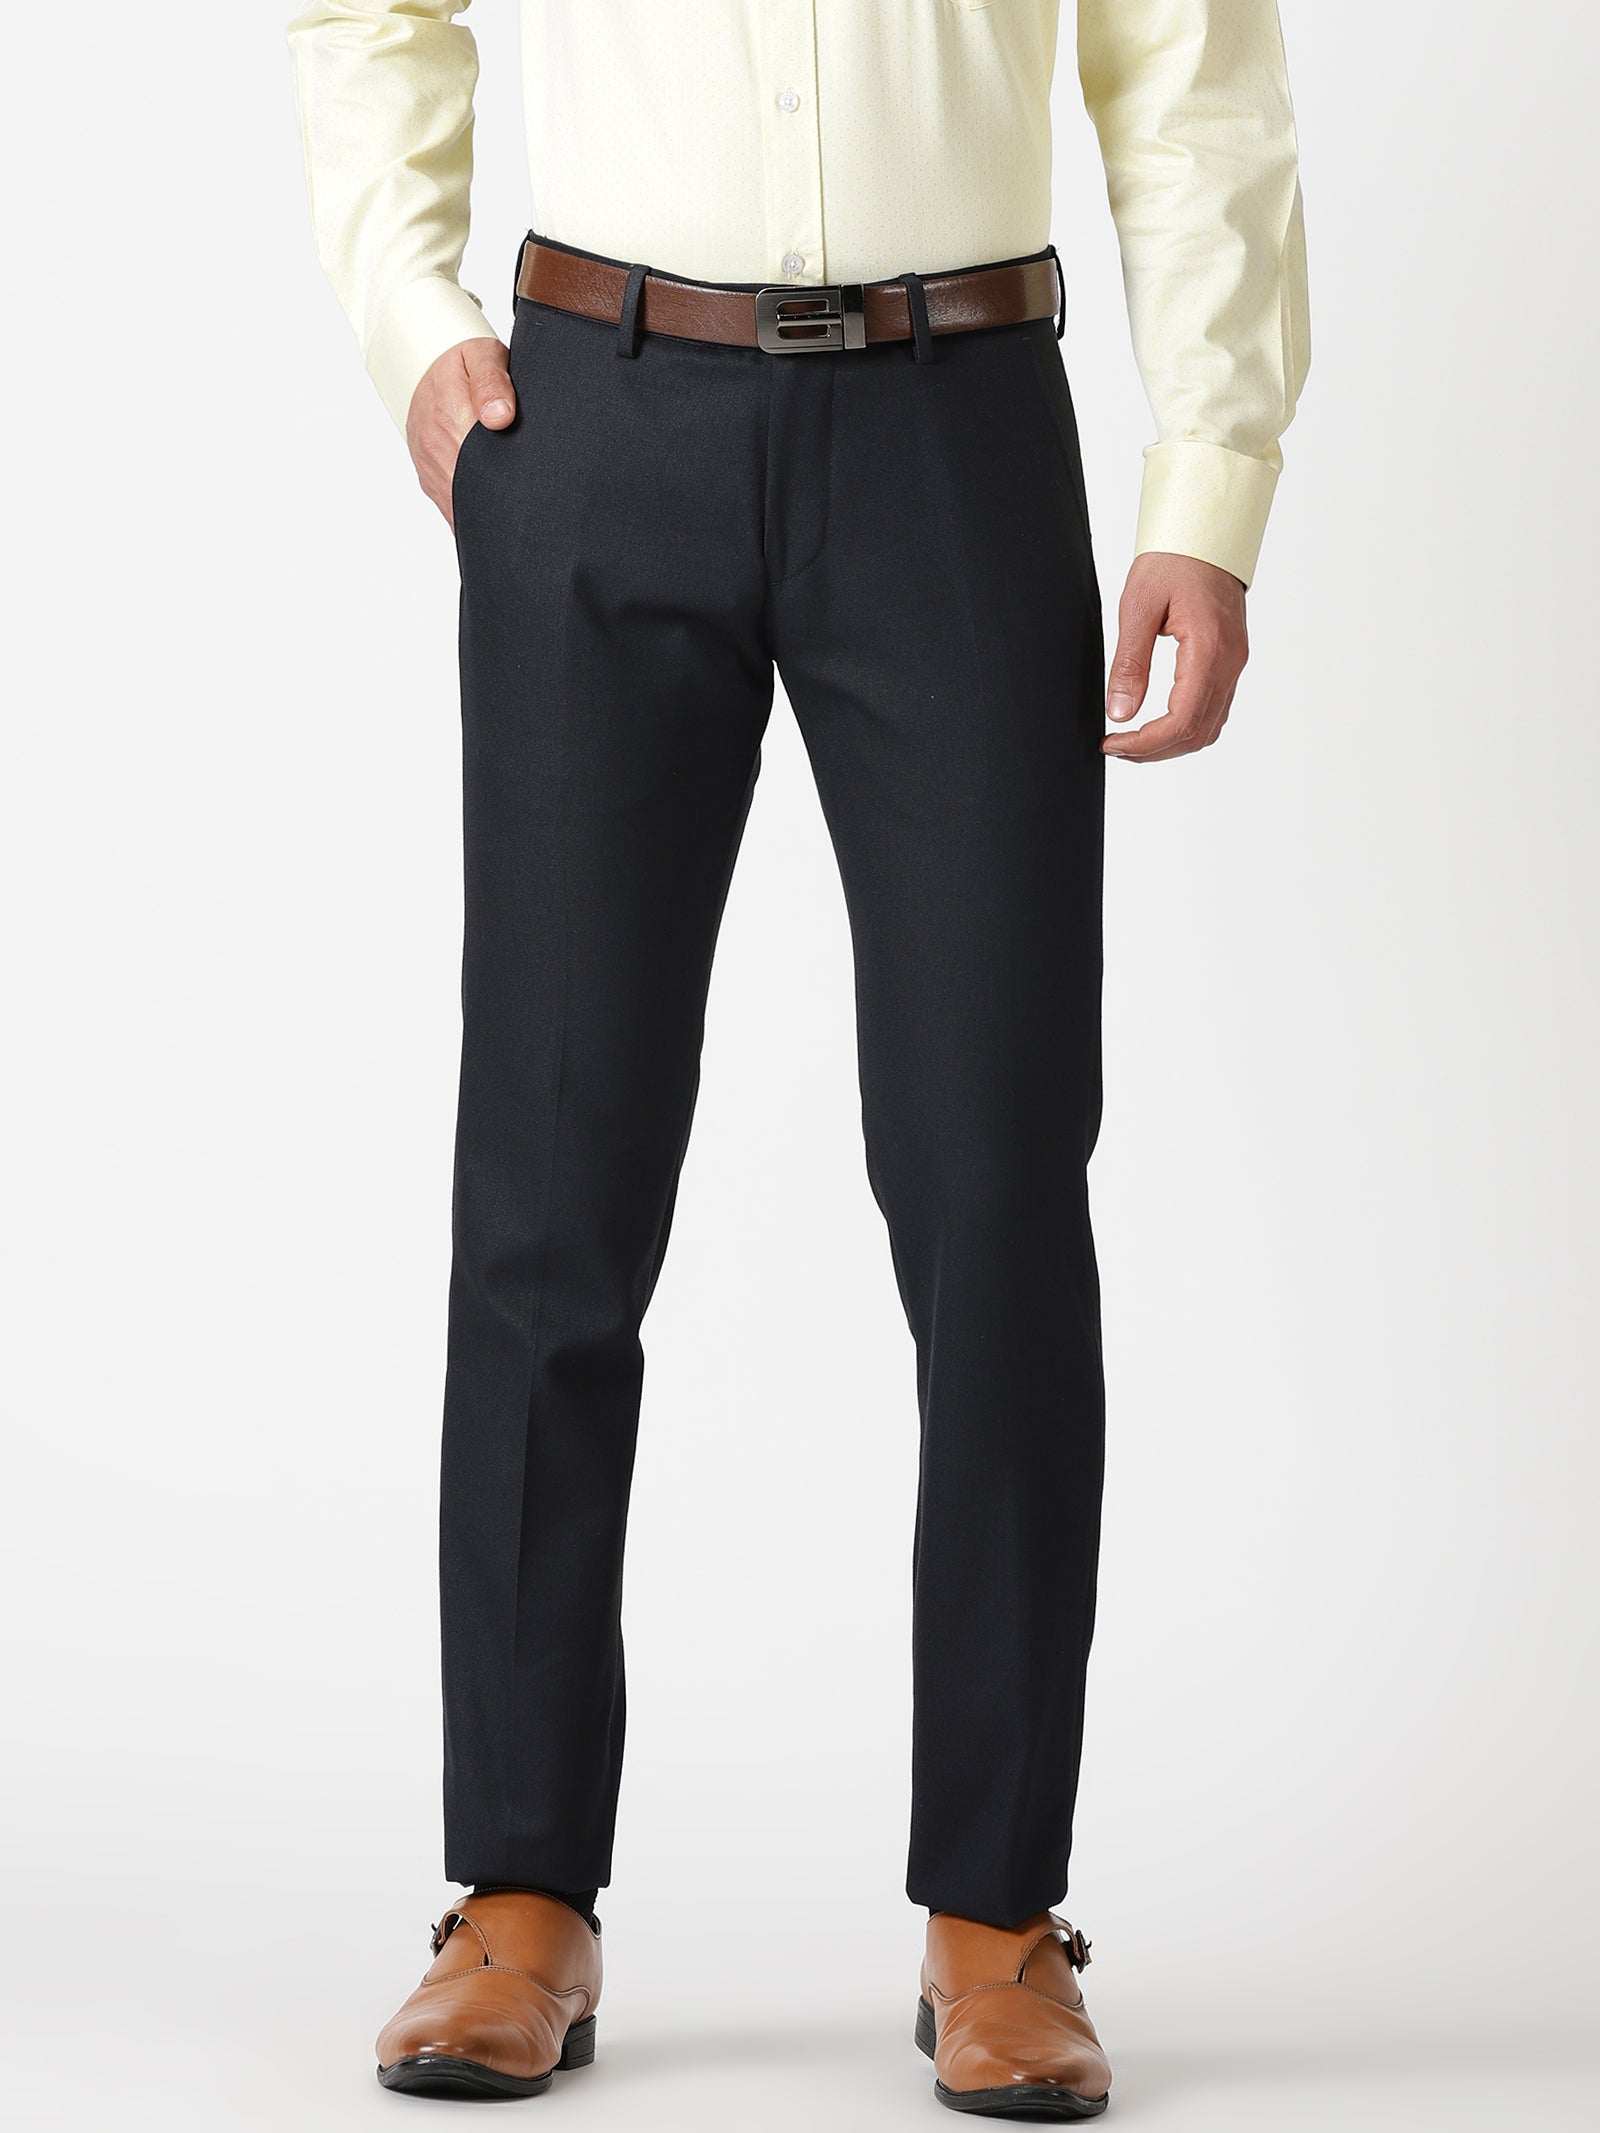 Pinnacle of Elegance: Top Premium men's formal pants Manufacturers